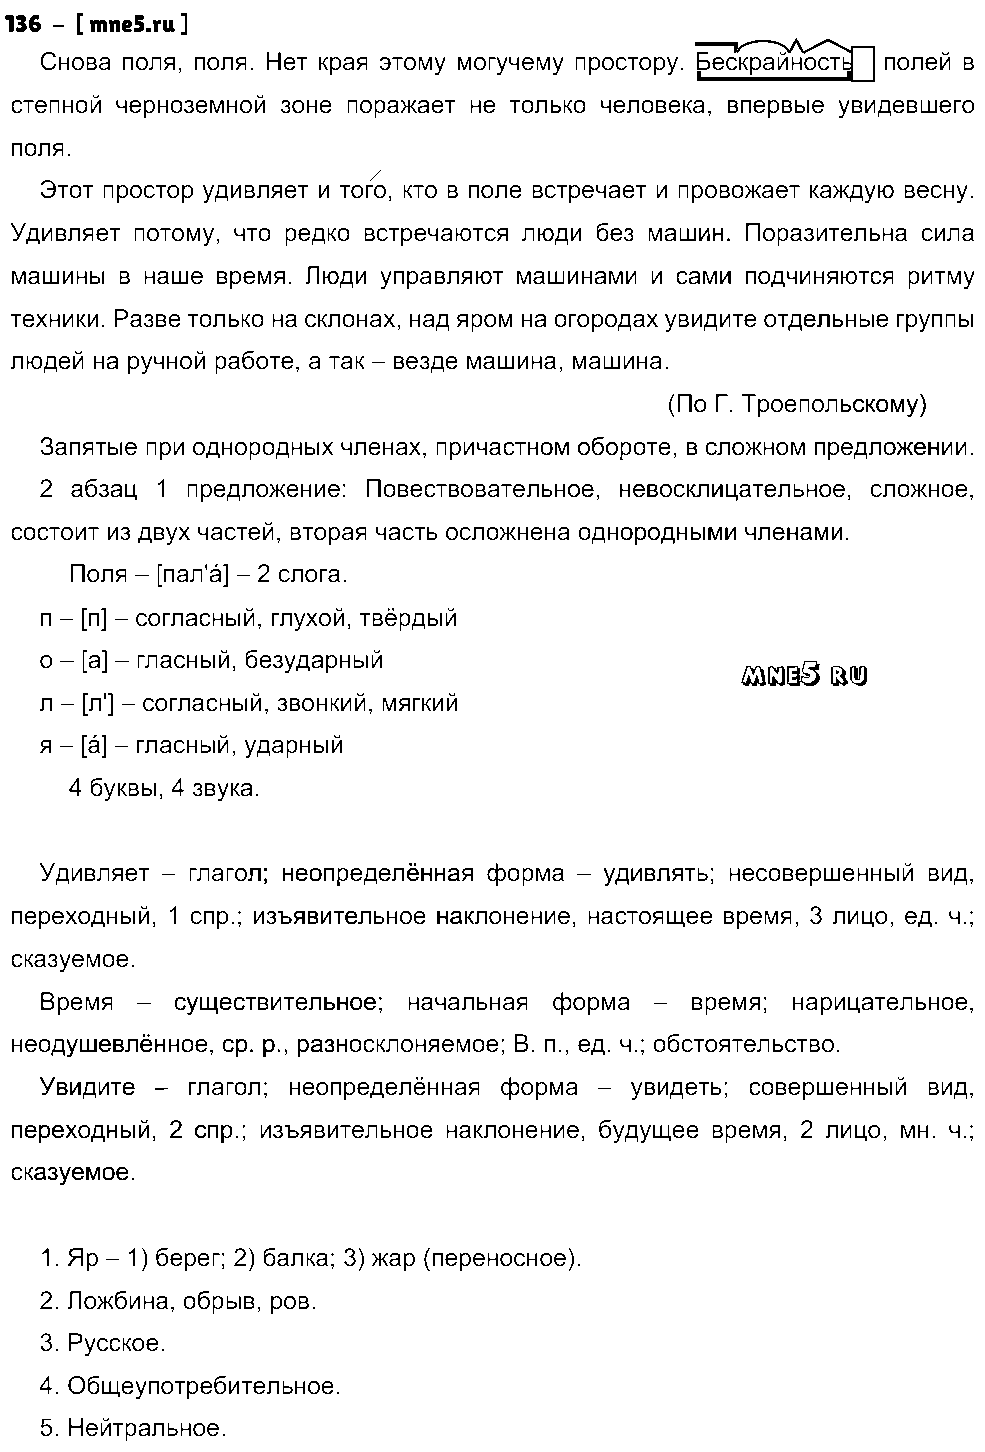 ГДЗ Русский язык 8 класс - 136